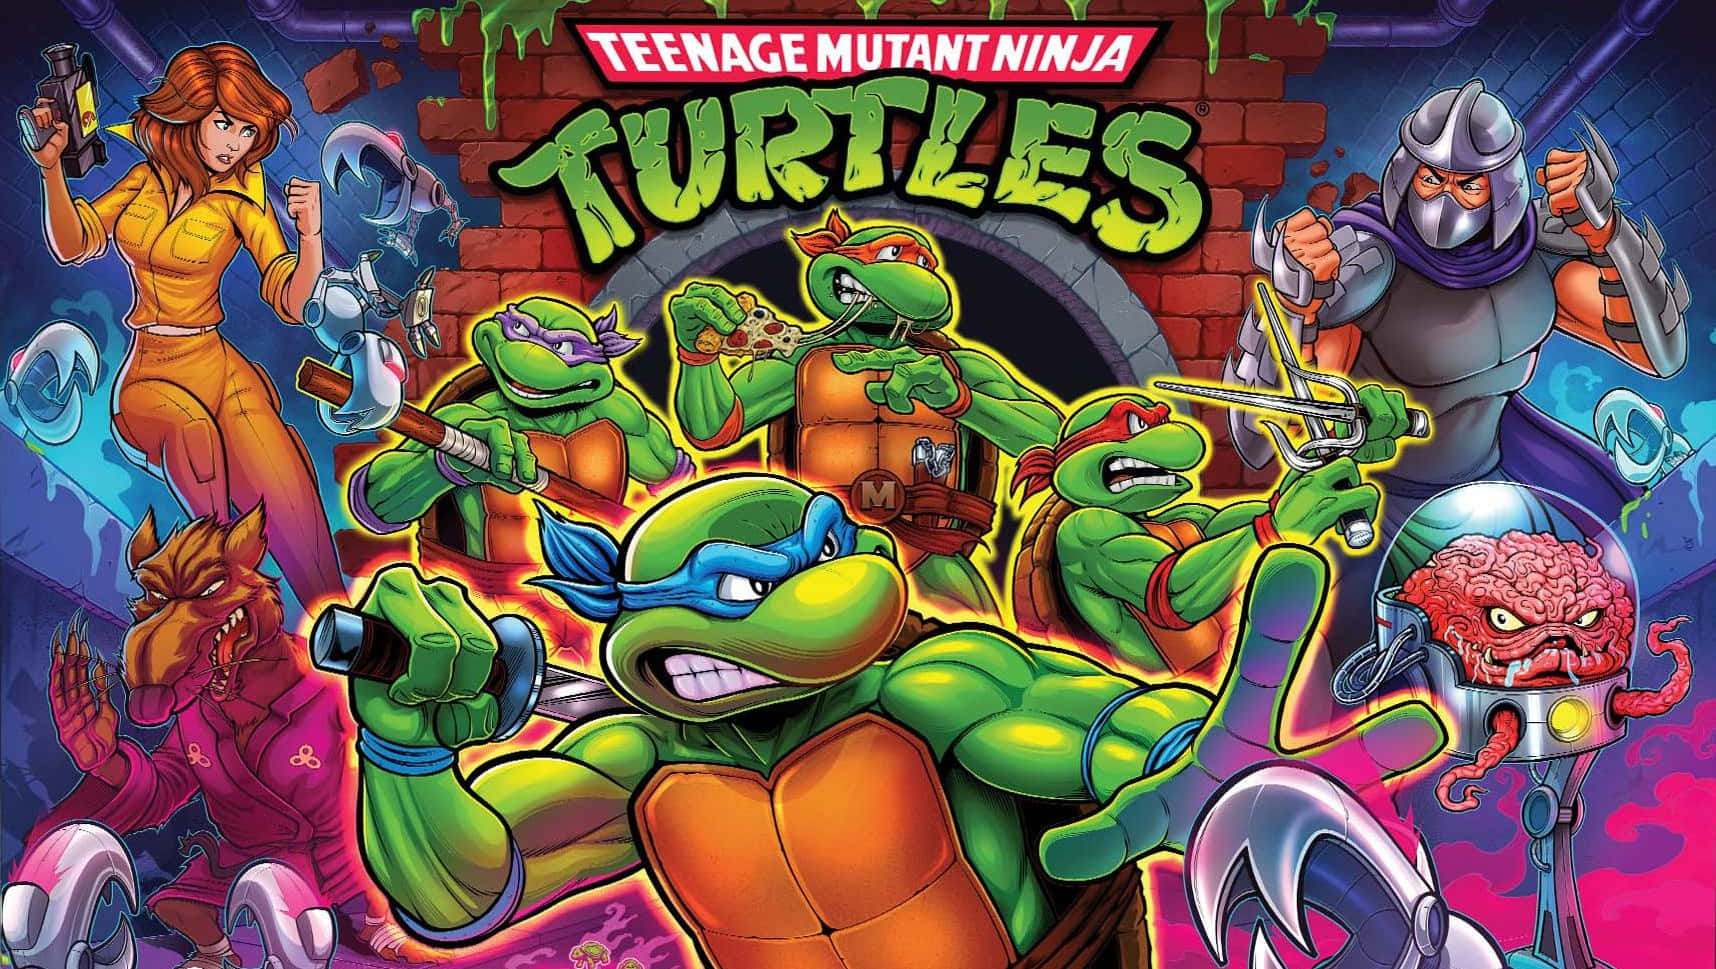 Detikoniske Teenage Mutant Ninja Turtles-hold Samarbejder.